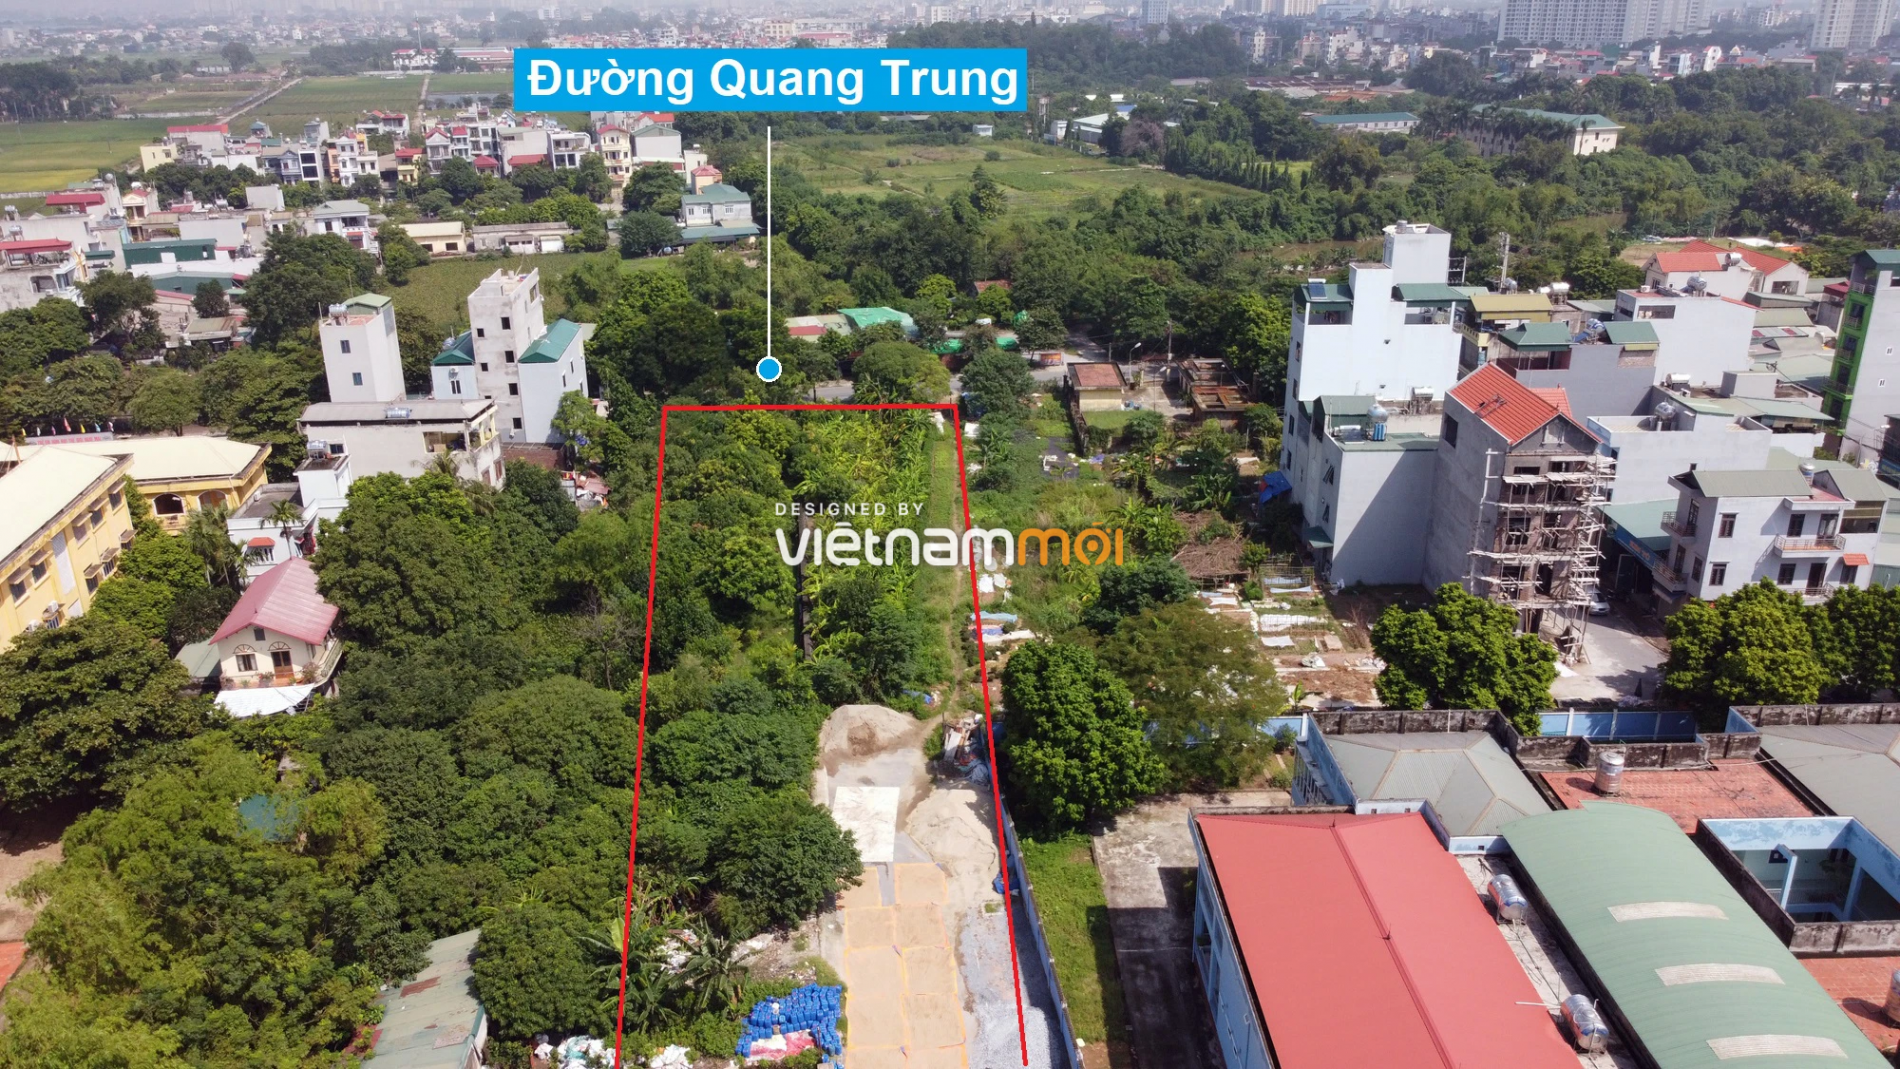 Những khu đất sắp thu hồi để mở đường ở xã Ngọc Hồi, Thanh Trì, Hà Nội (phần 2) - Ảnh 5.